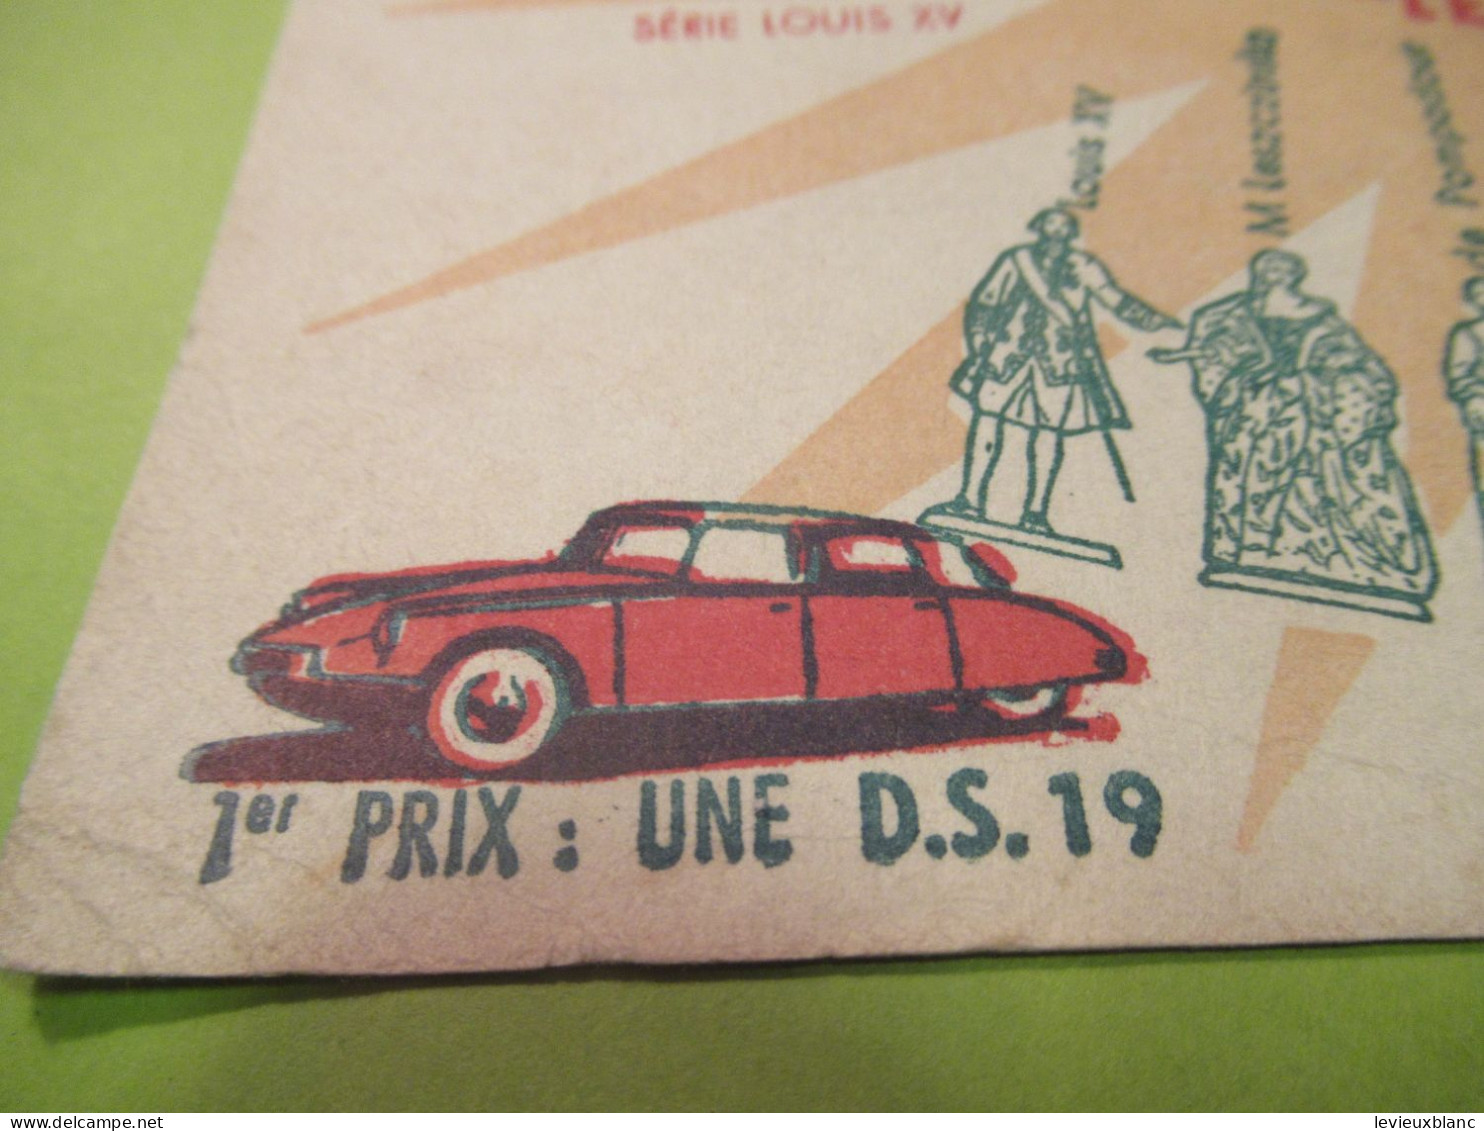 Buvard Ancien/Café/ MOKAREX/Concours De Coloriage/Epinay/1957     BUV625 - Koffie En Thee